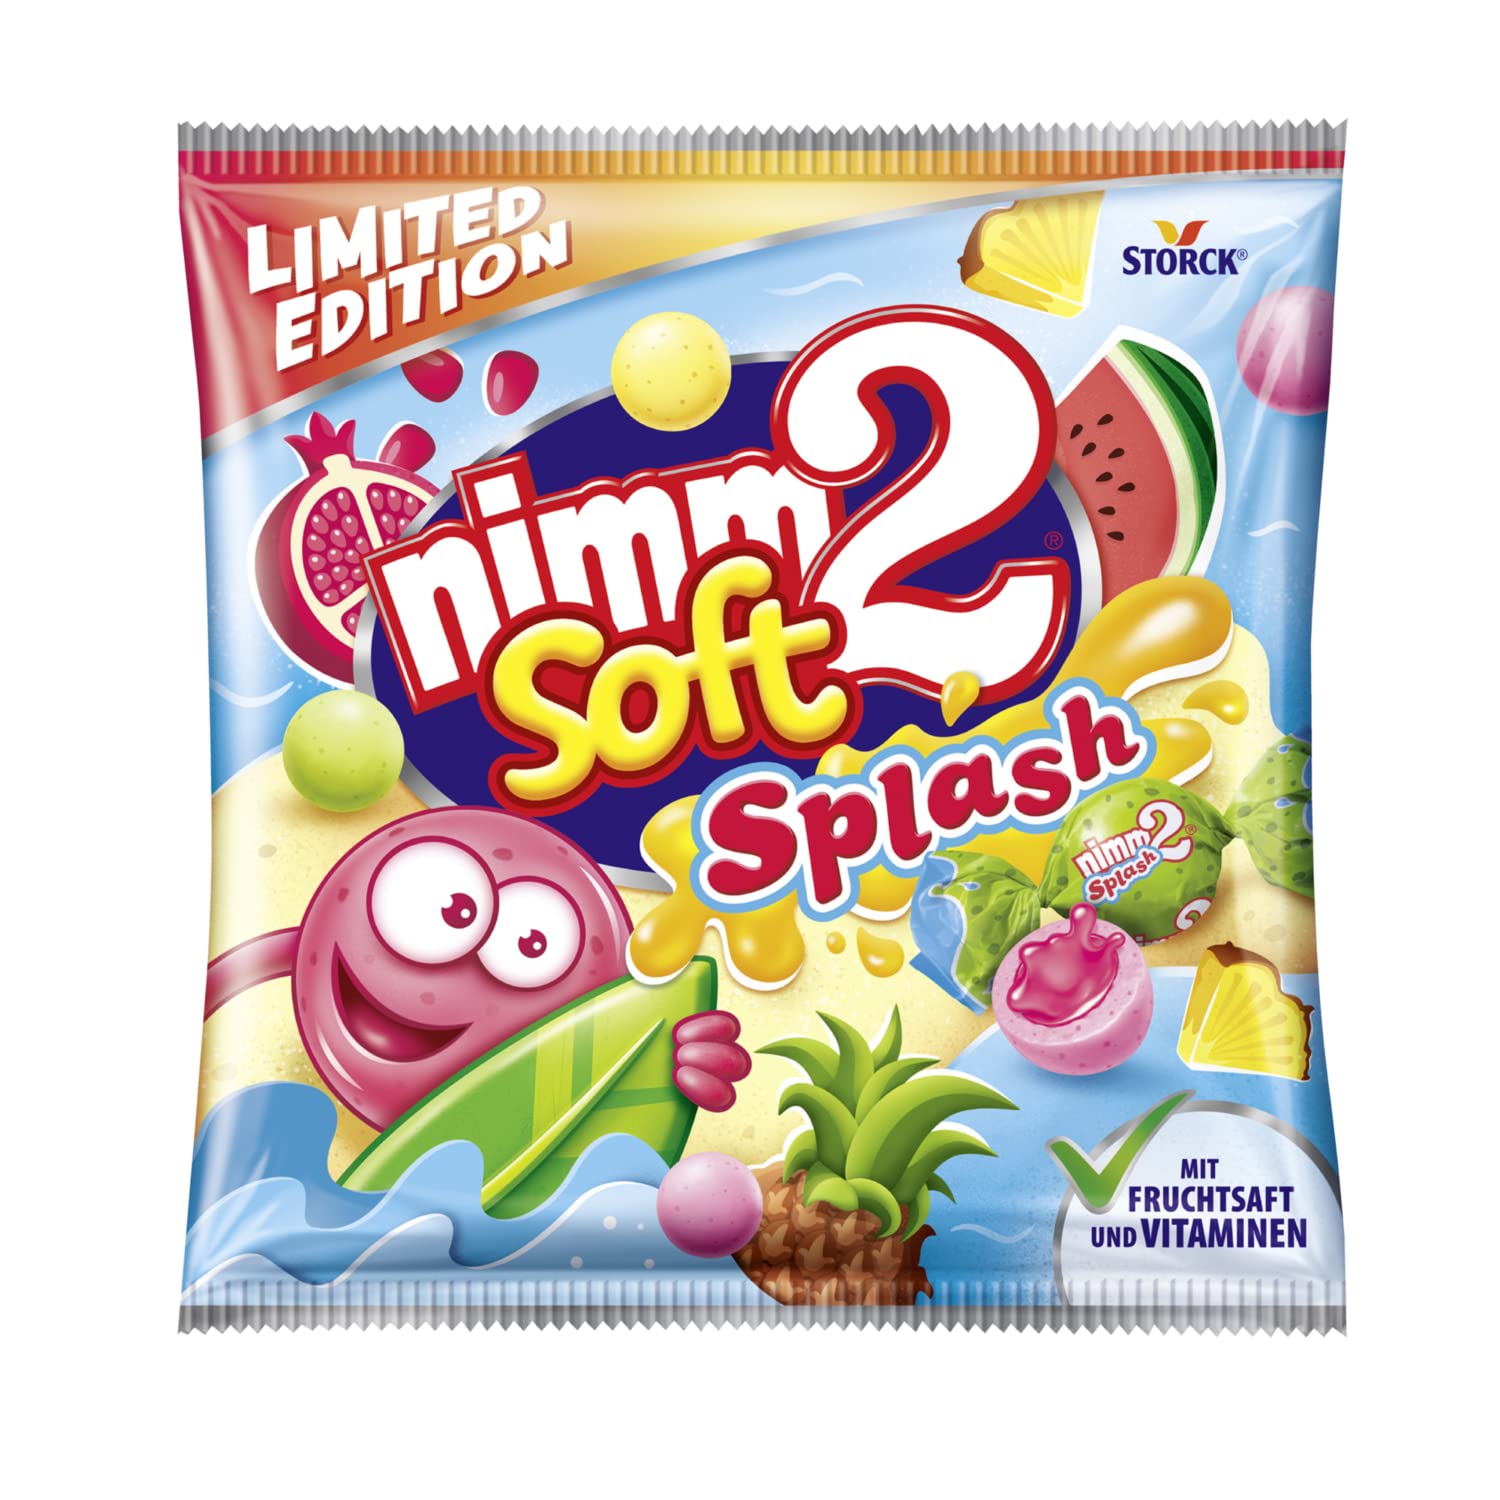 nimm2 soft Splash – 1 x 240g – Gefüllte Kaubonbons mit Fruchtsaft und Vitaminen 